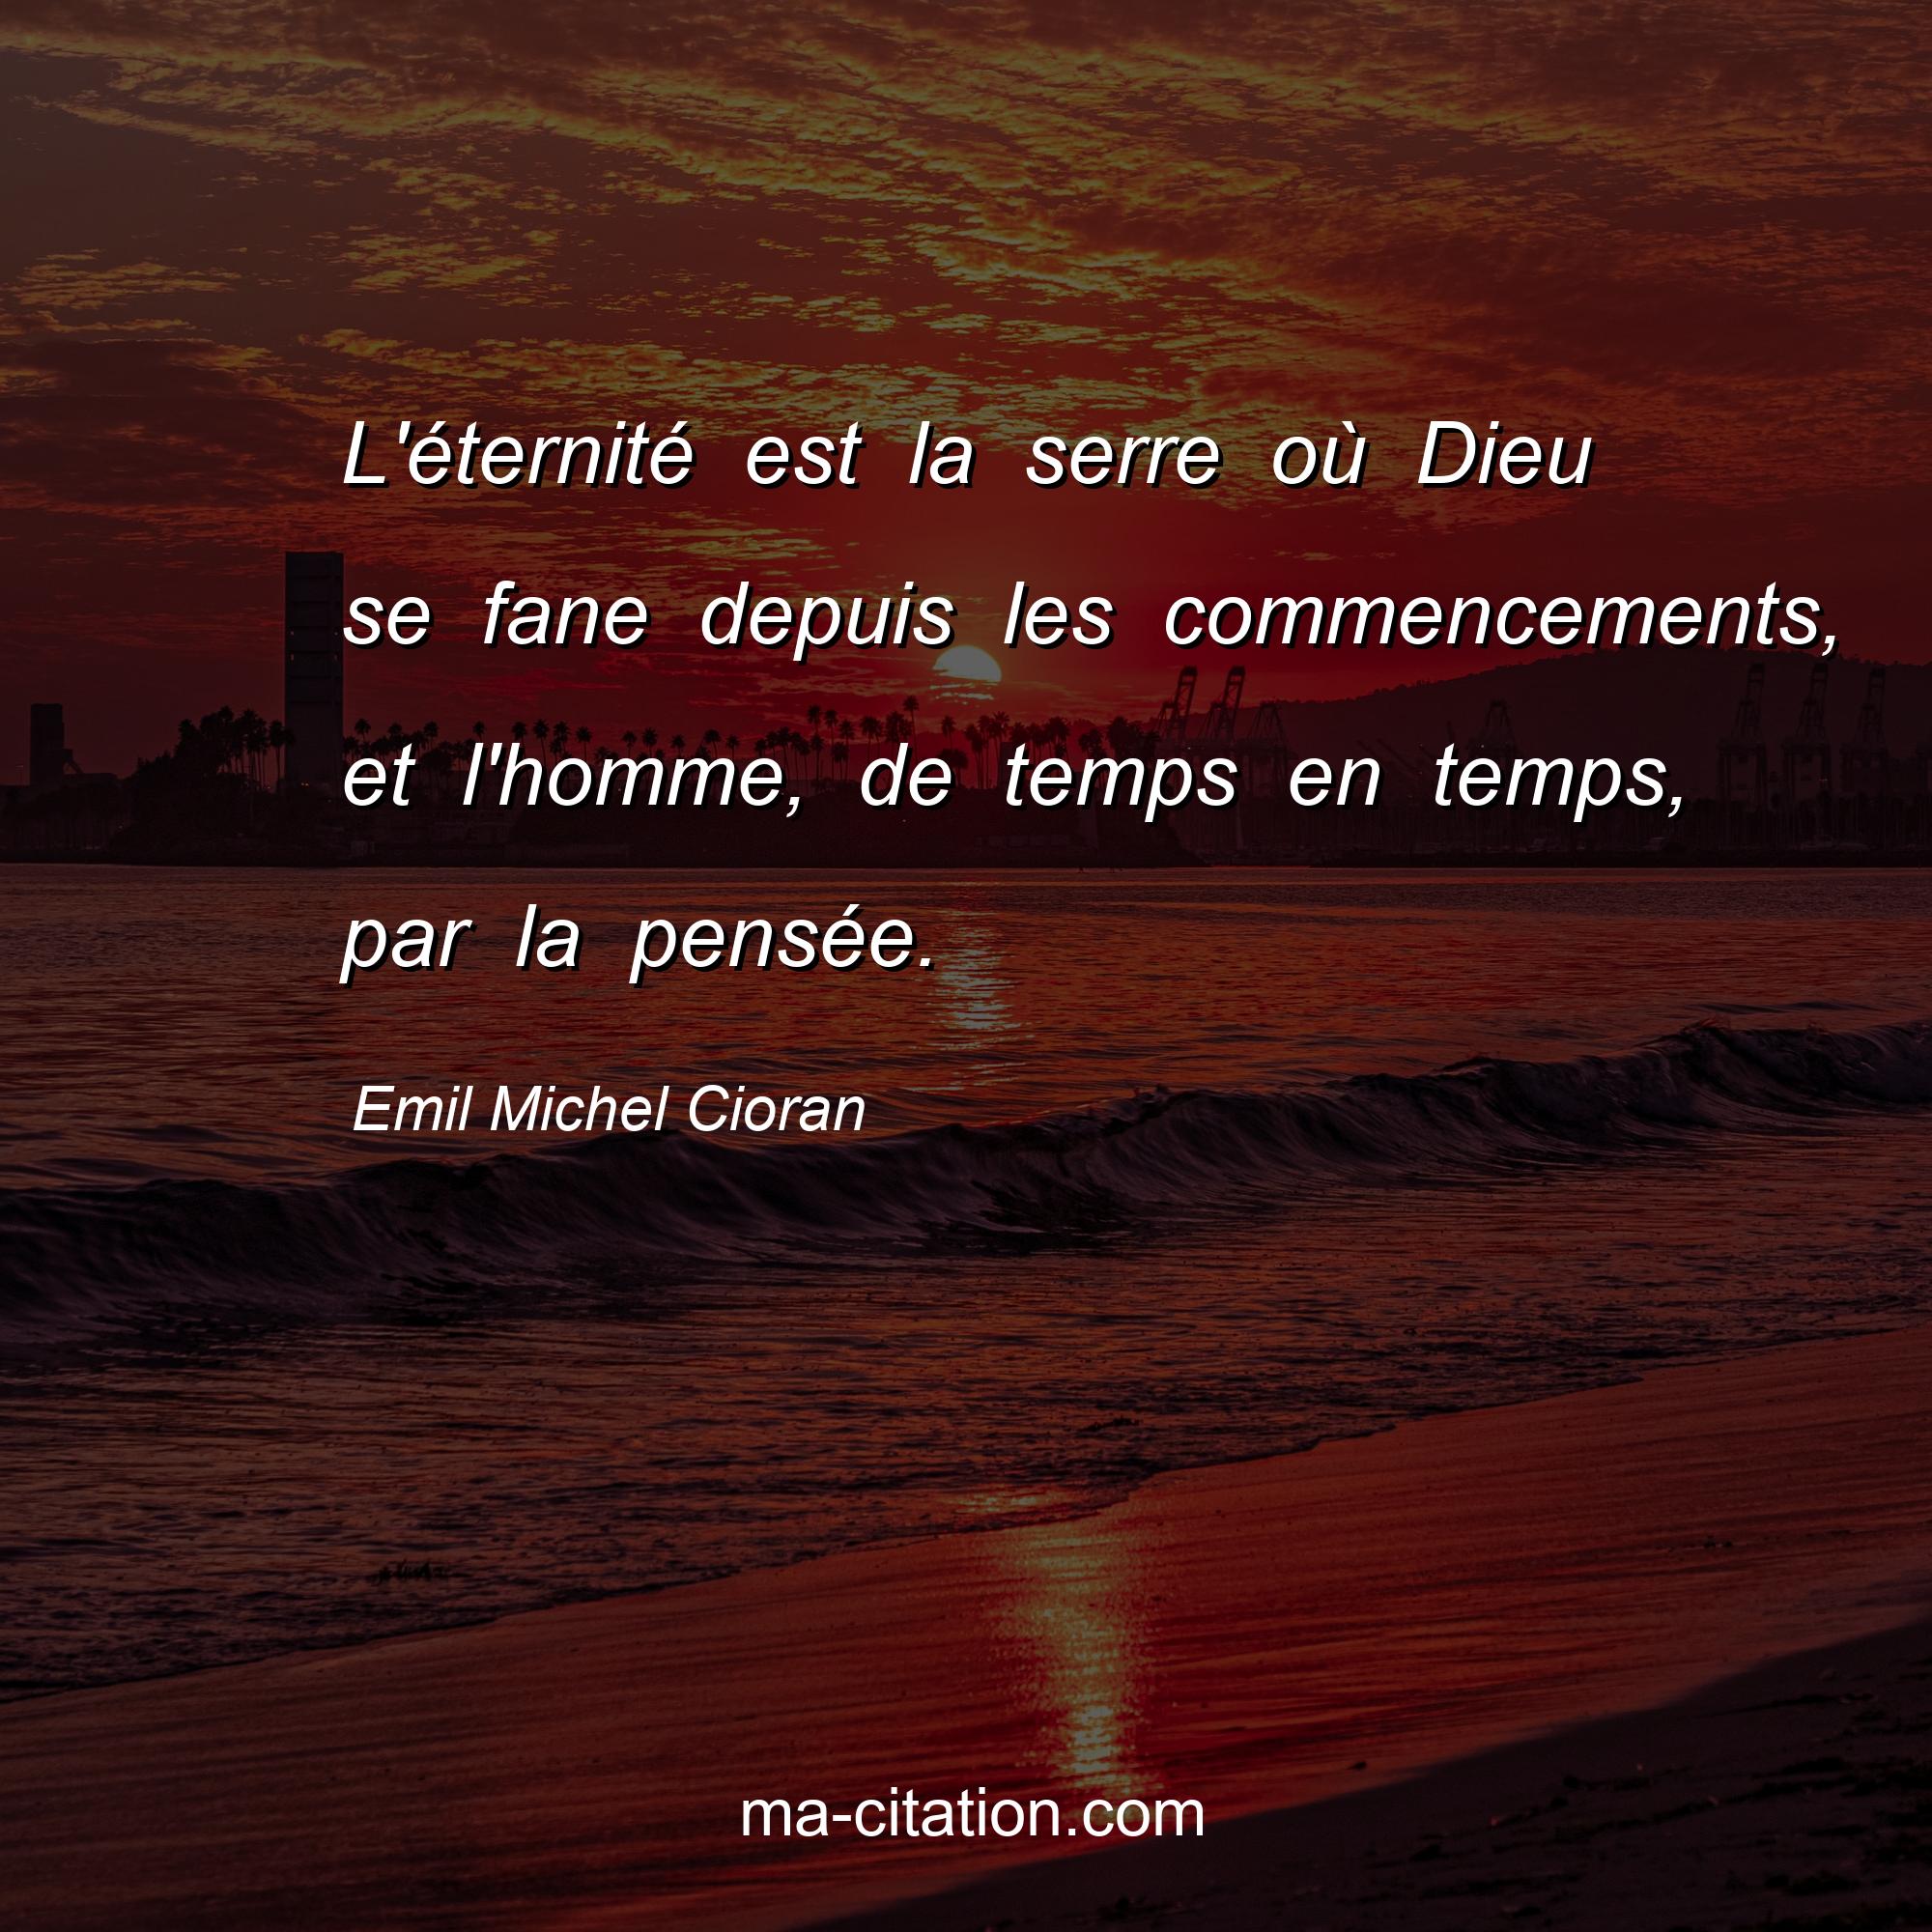 Emil Michel Cioran : L'éternité est la serre où Dieu se fane depuis les commencements, et l'homme, de temps en temps, par la pensée.